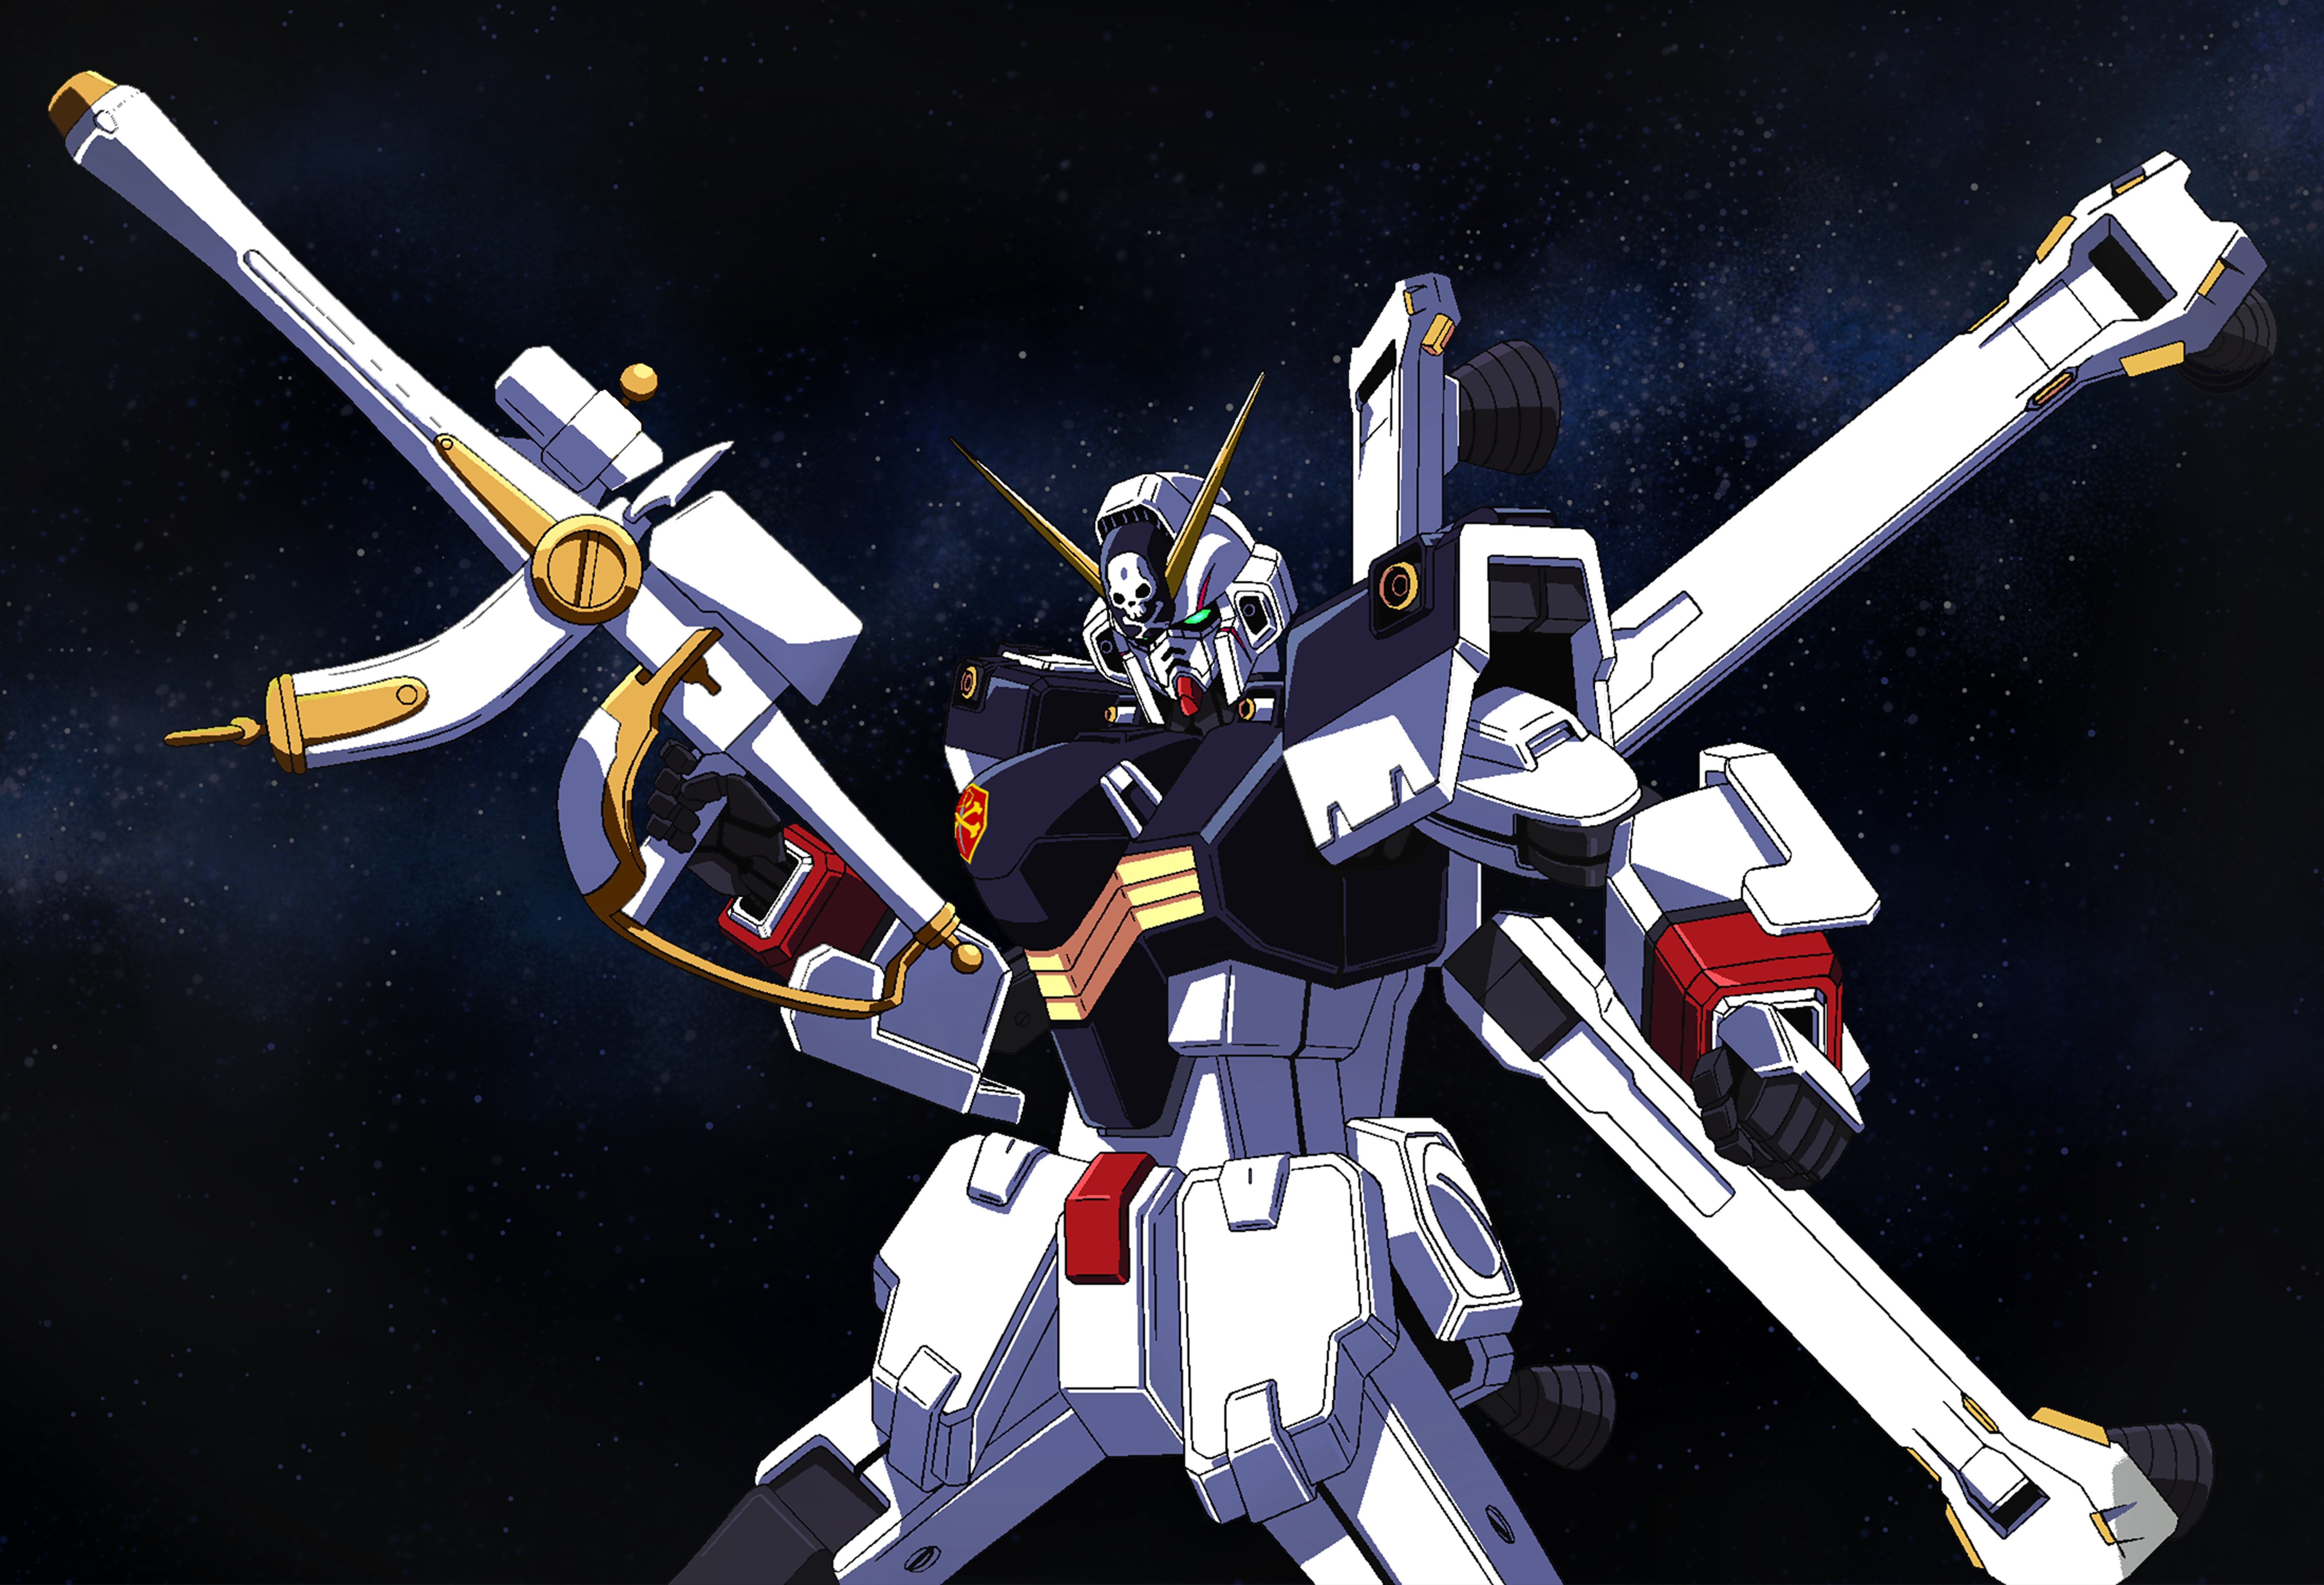 Anime Mechs Super Robot Taisen Gundam Artwork Digital Art Fan Art Crossbone Gundam X 1 Mobile Suit C 6111x4167